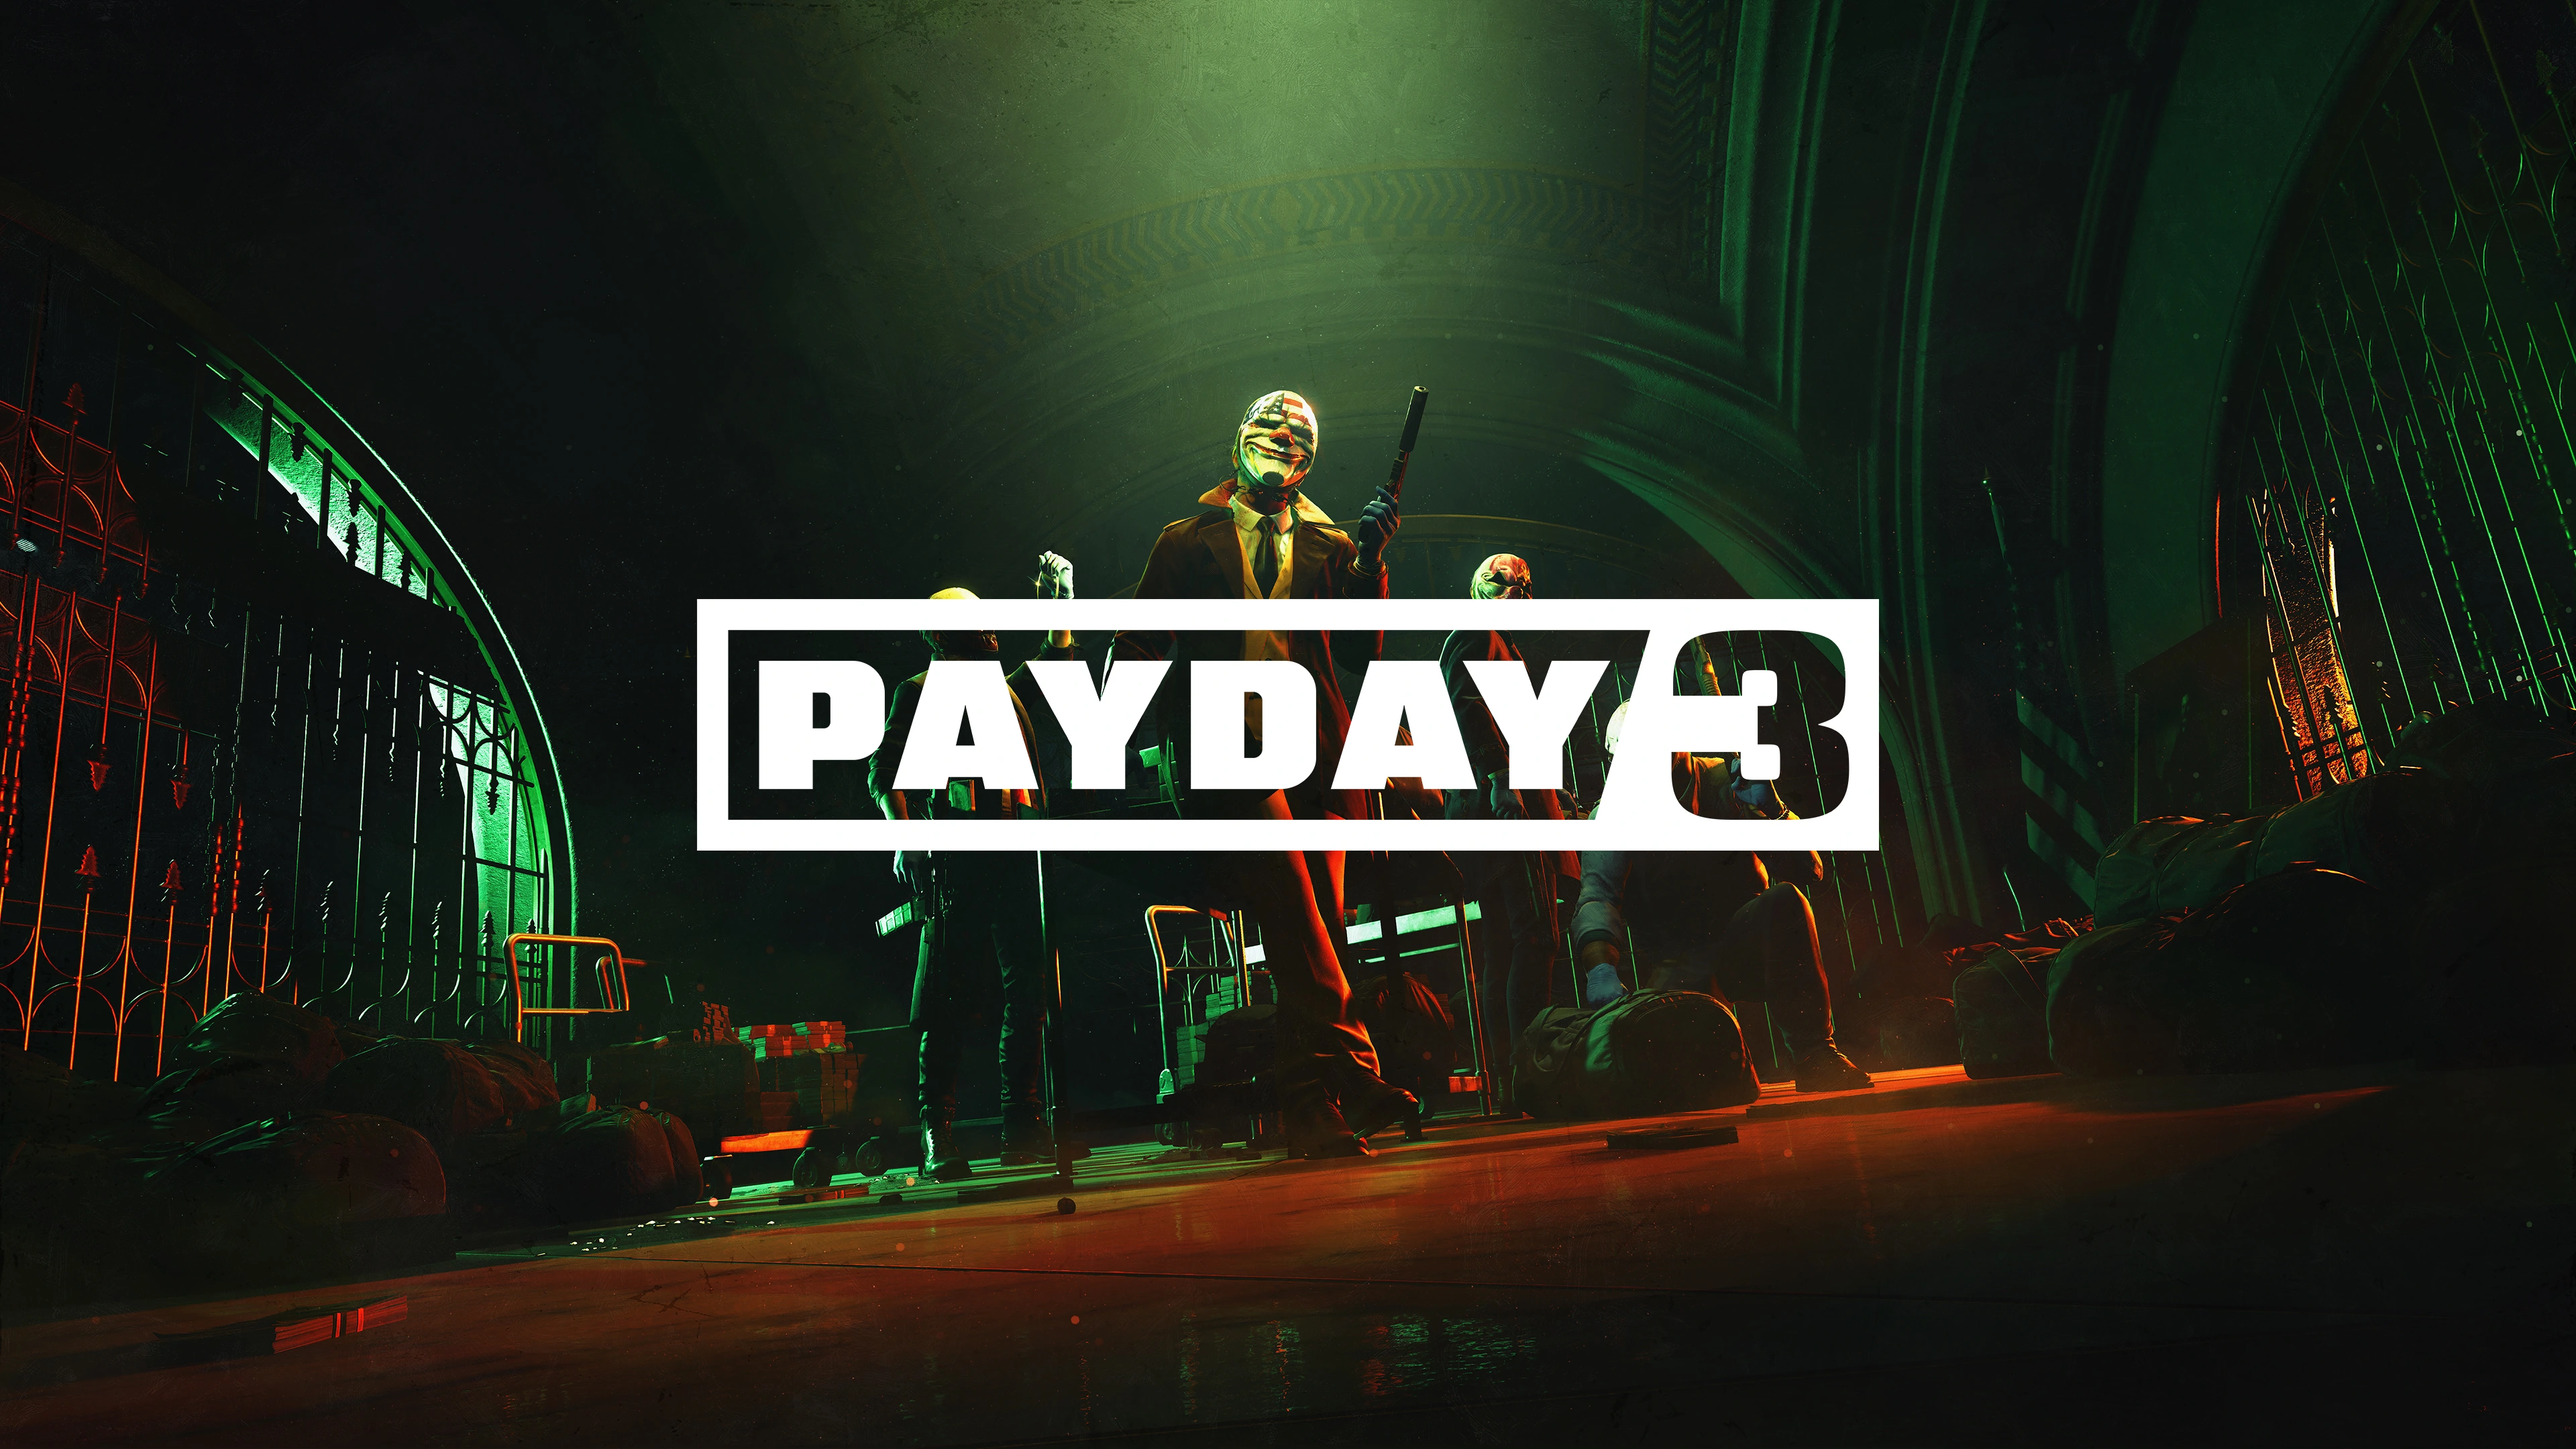 A Payday 3 élőszereplős trailerében a híres rapper és színész Ice-t is megjelenik